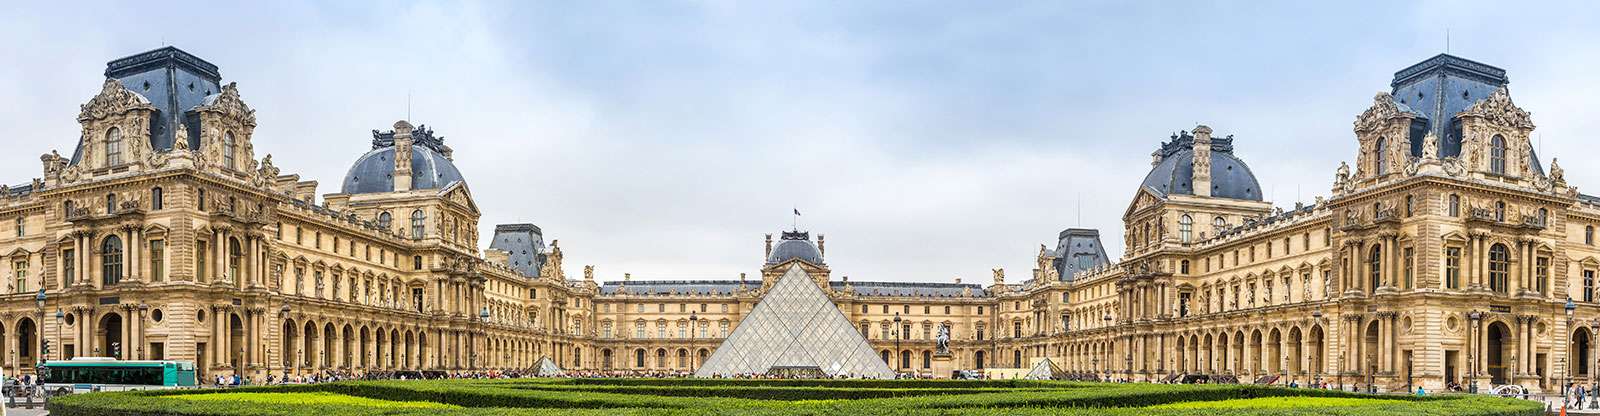 Luwr - muzeum sztuki w Paryżu